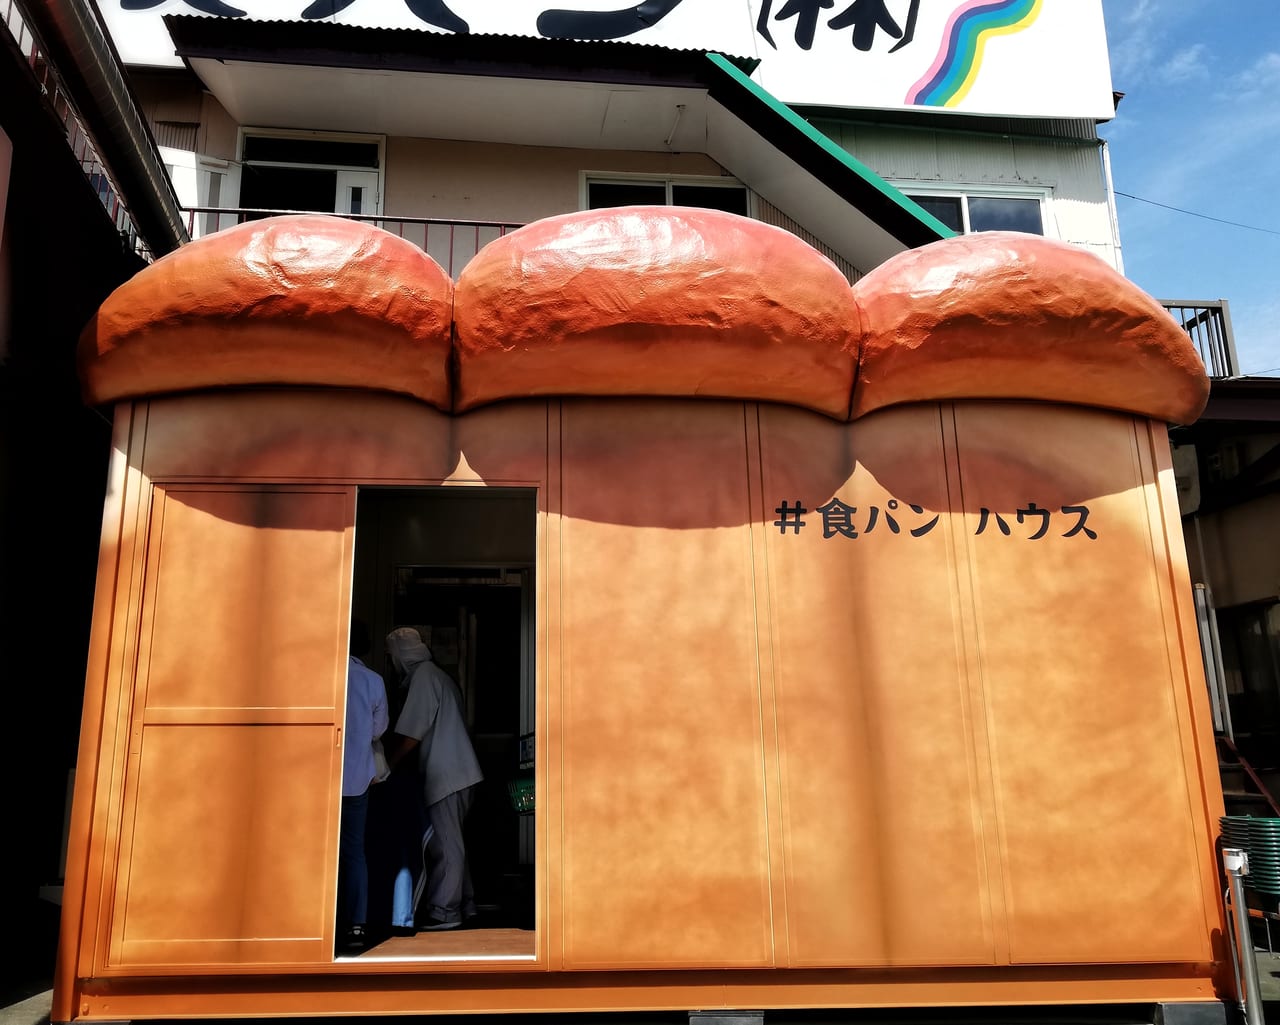 高久製パン本社直売所が食パンハウスとしてリニューアルオープン